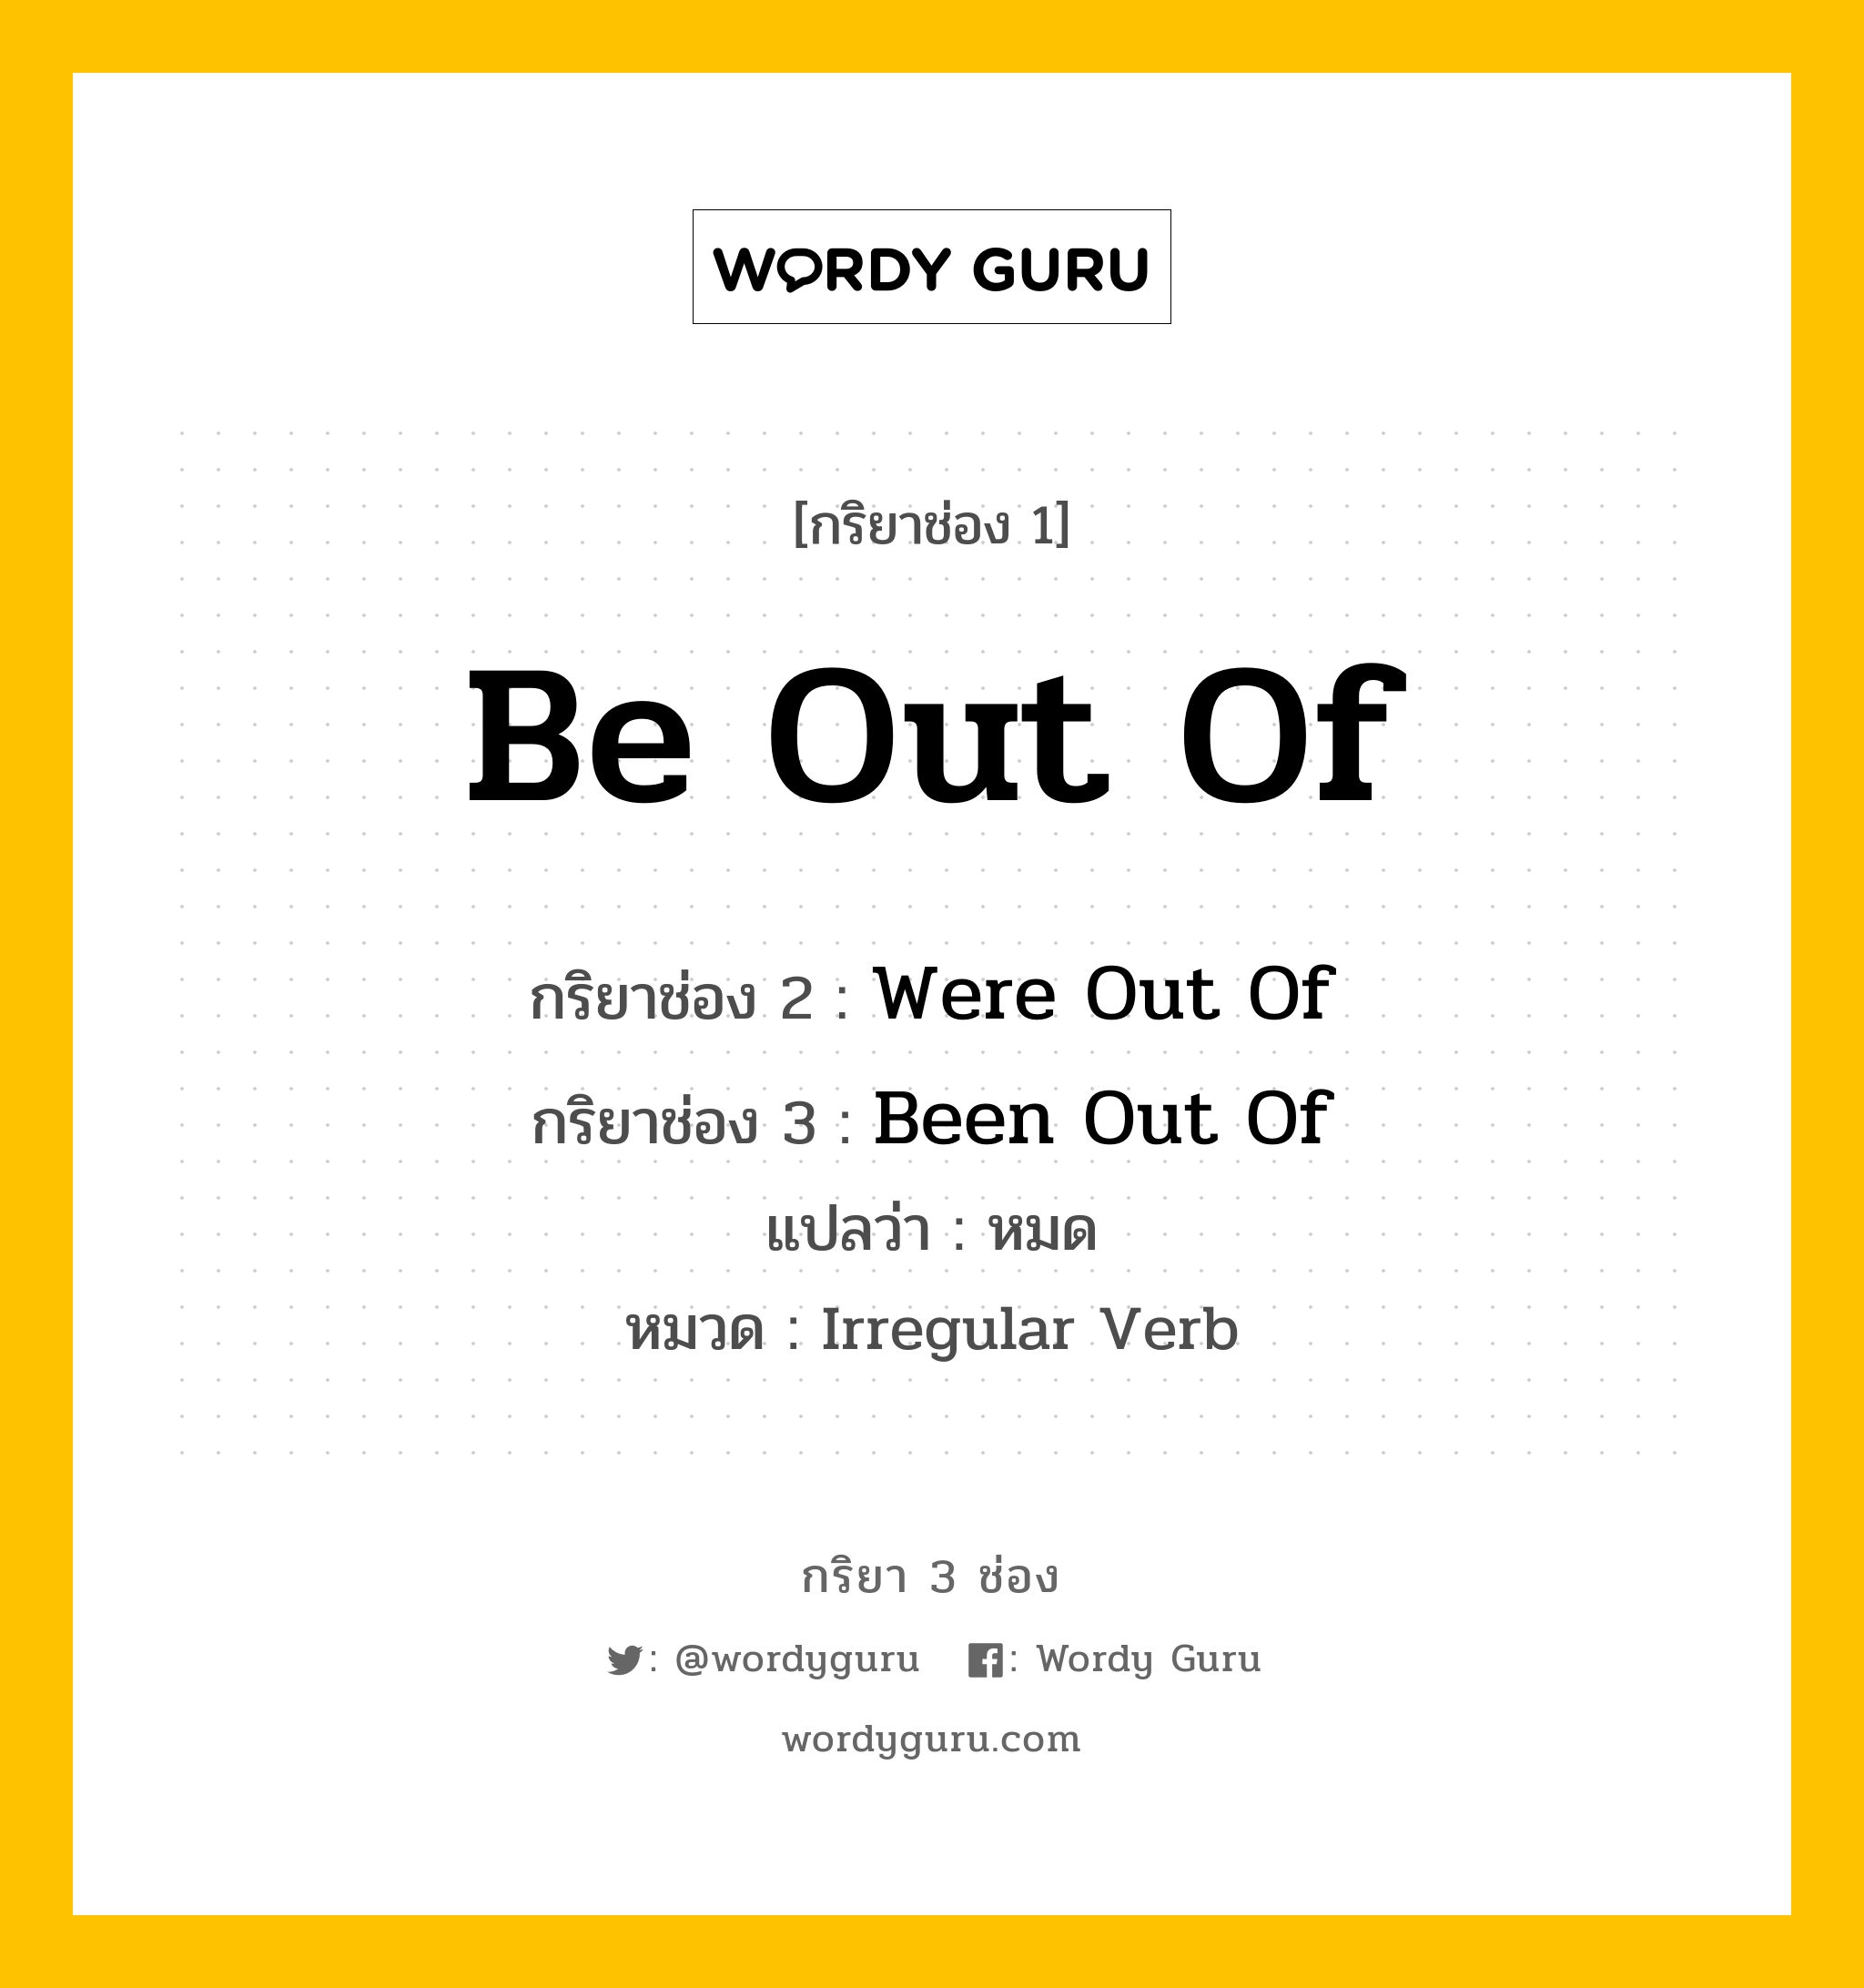 กริยา 3 ช่อง: Be Out Of ช่อง 2 Be Out Of ช่อง 3 คืออะไร, กริยาช่อง 1 Be Out Of กริยาช่อง 2 Were Out Of กริยาช่อง 3 Been Out Of แปลว่า หมด หมวด Irregular Verb หมวด Irregular Verb